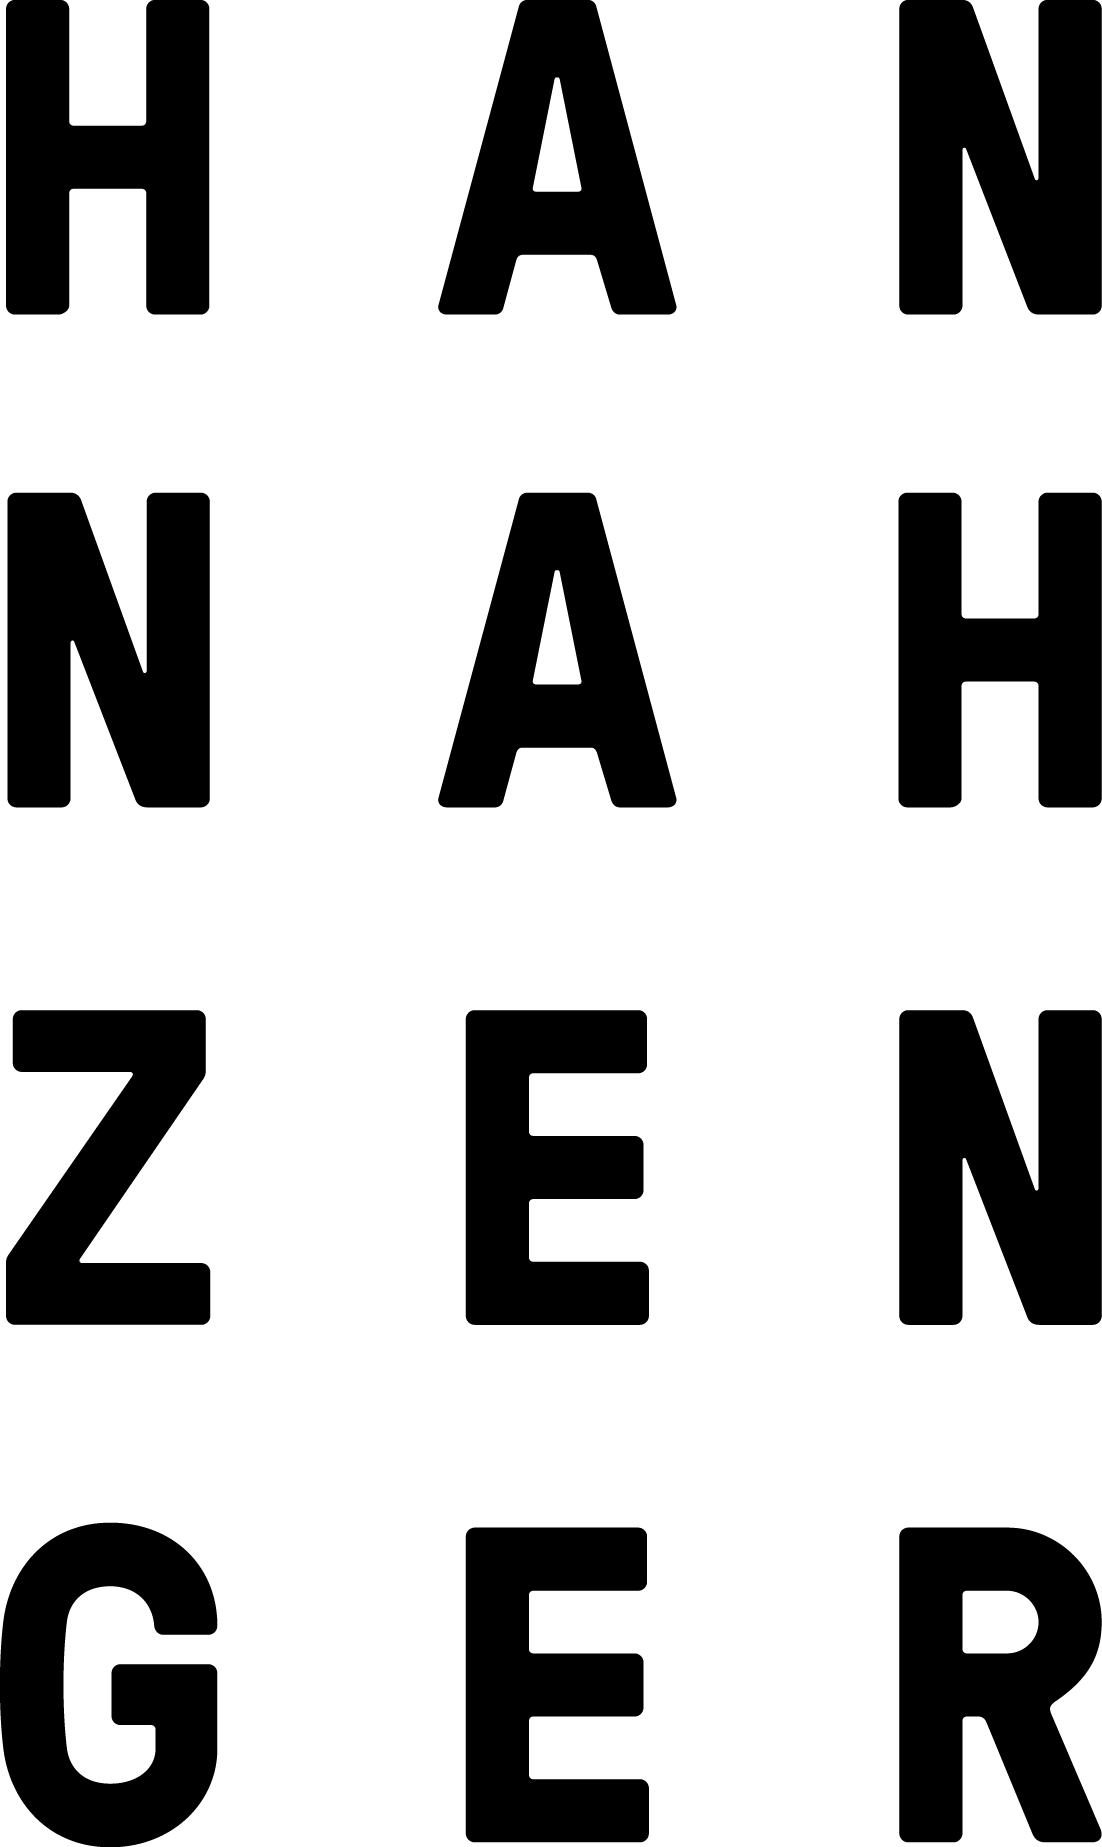 HANNAHZENGER PORZELLAN STUDIO